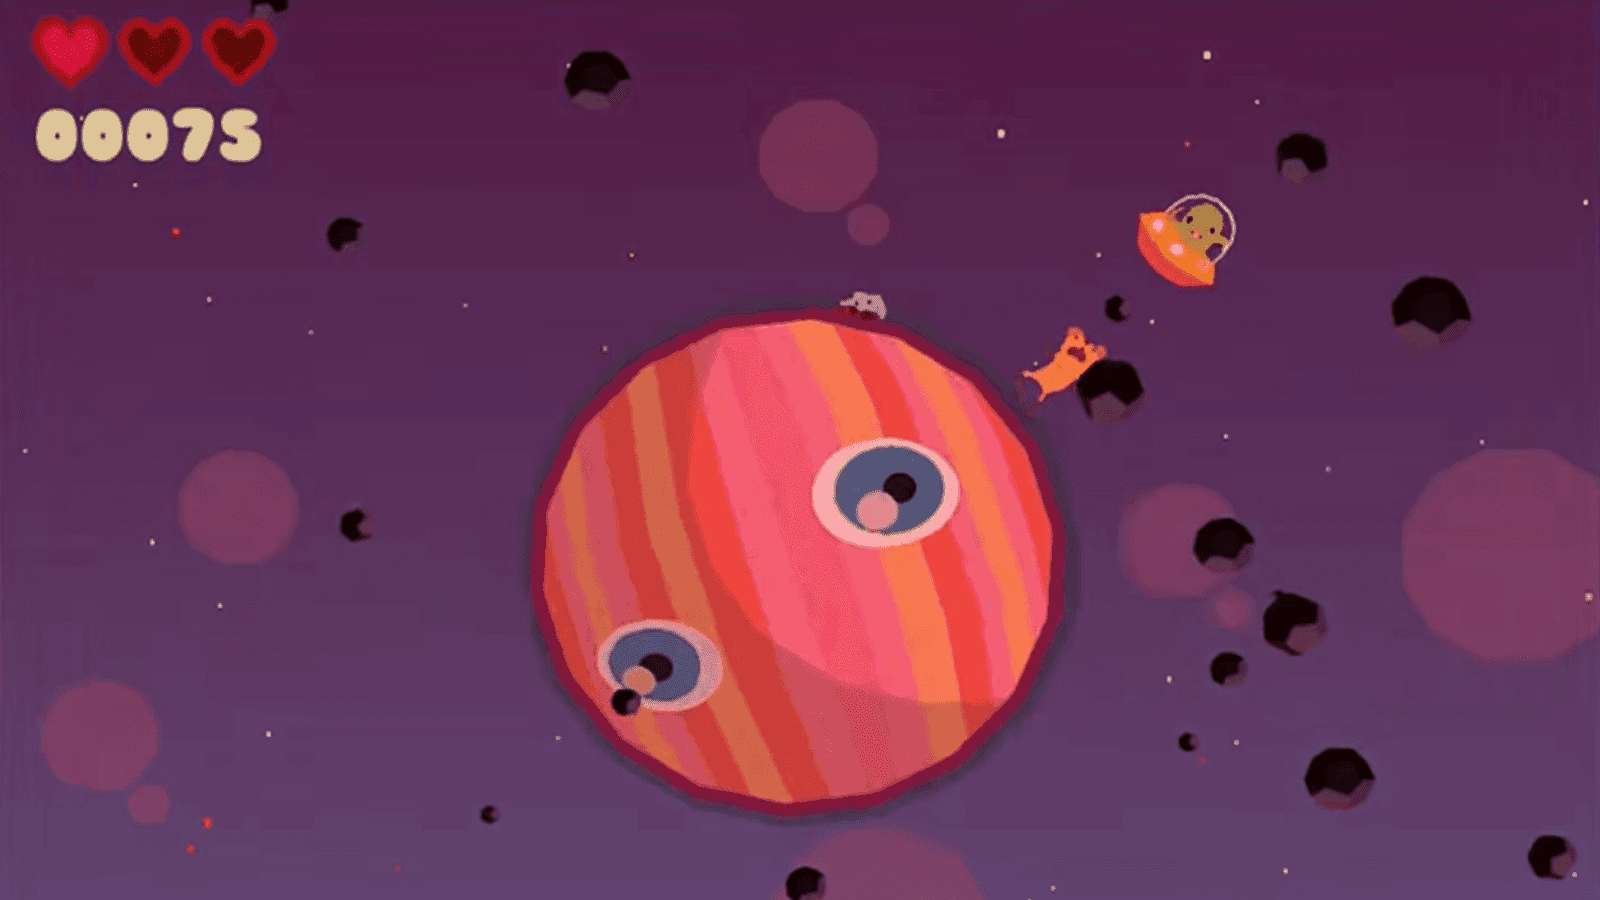 In PlanetQuest übernehmen Spieler die Rolle von Planetenforschern und -wächtern.